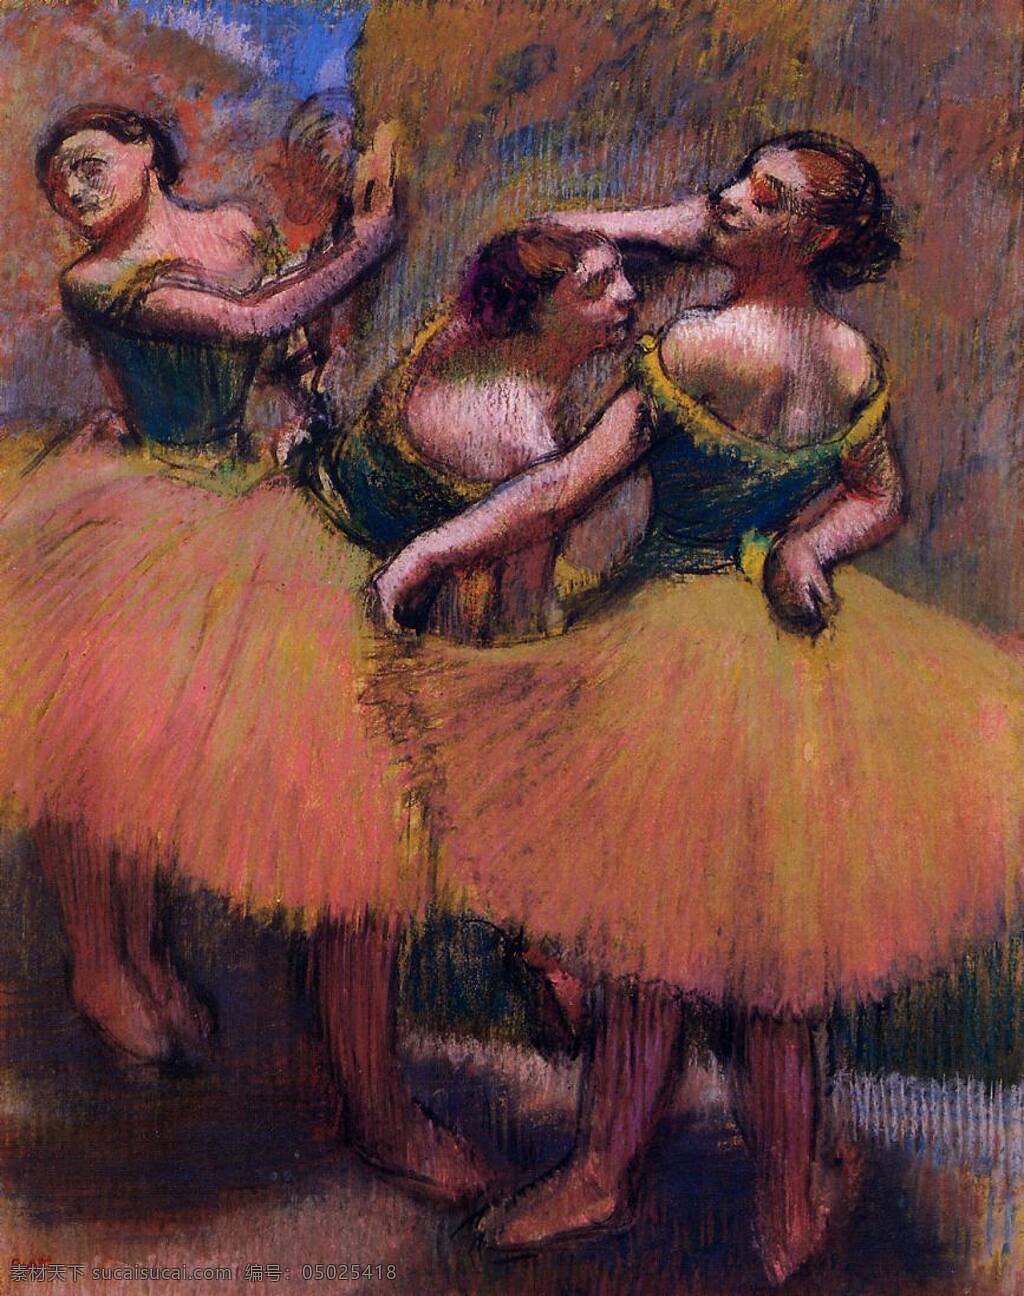 degas 印象派 人物 风景 人体 女性 油画 装饰画 法国 画家 埃德加 德加 edgar